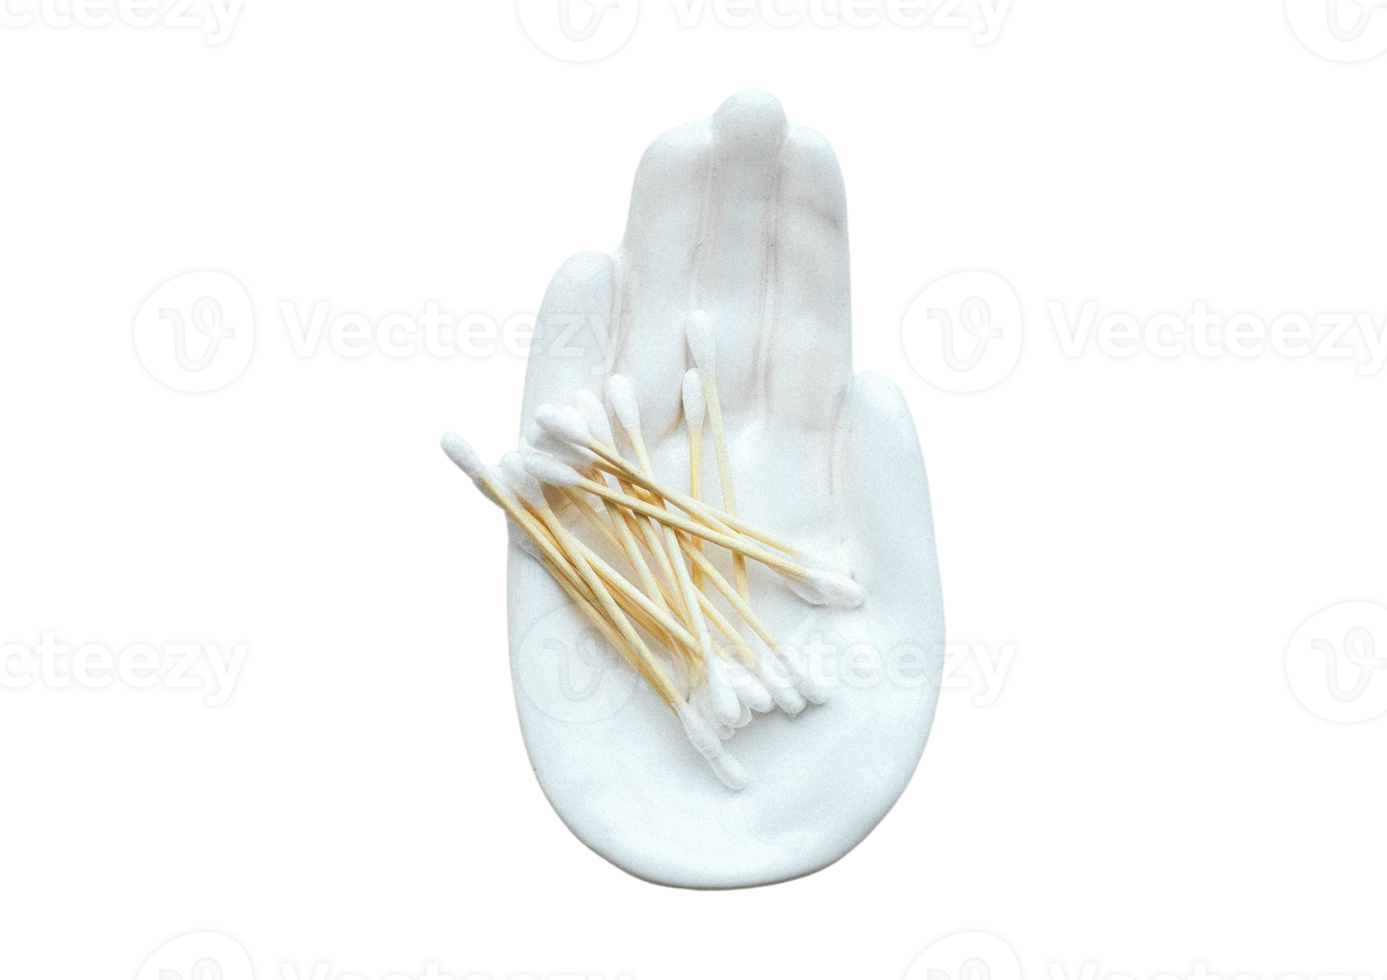 bianca piatto nel il forma di un' mano con tamponi isolato su un' trasparente sfondo png